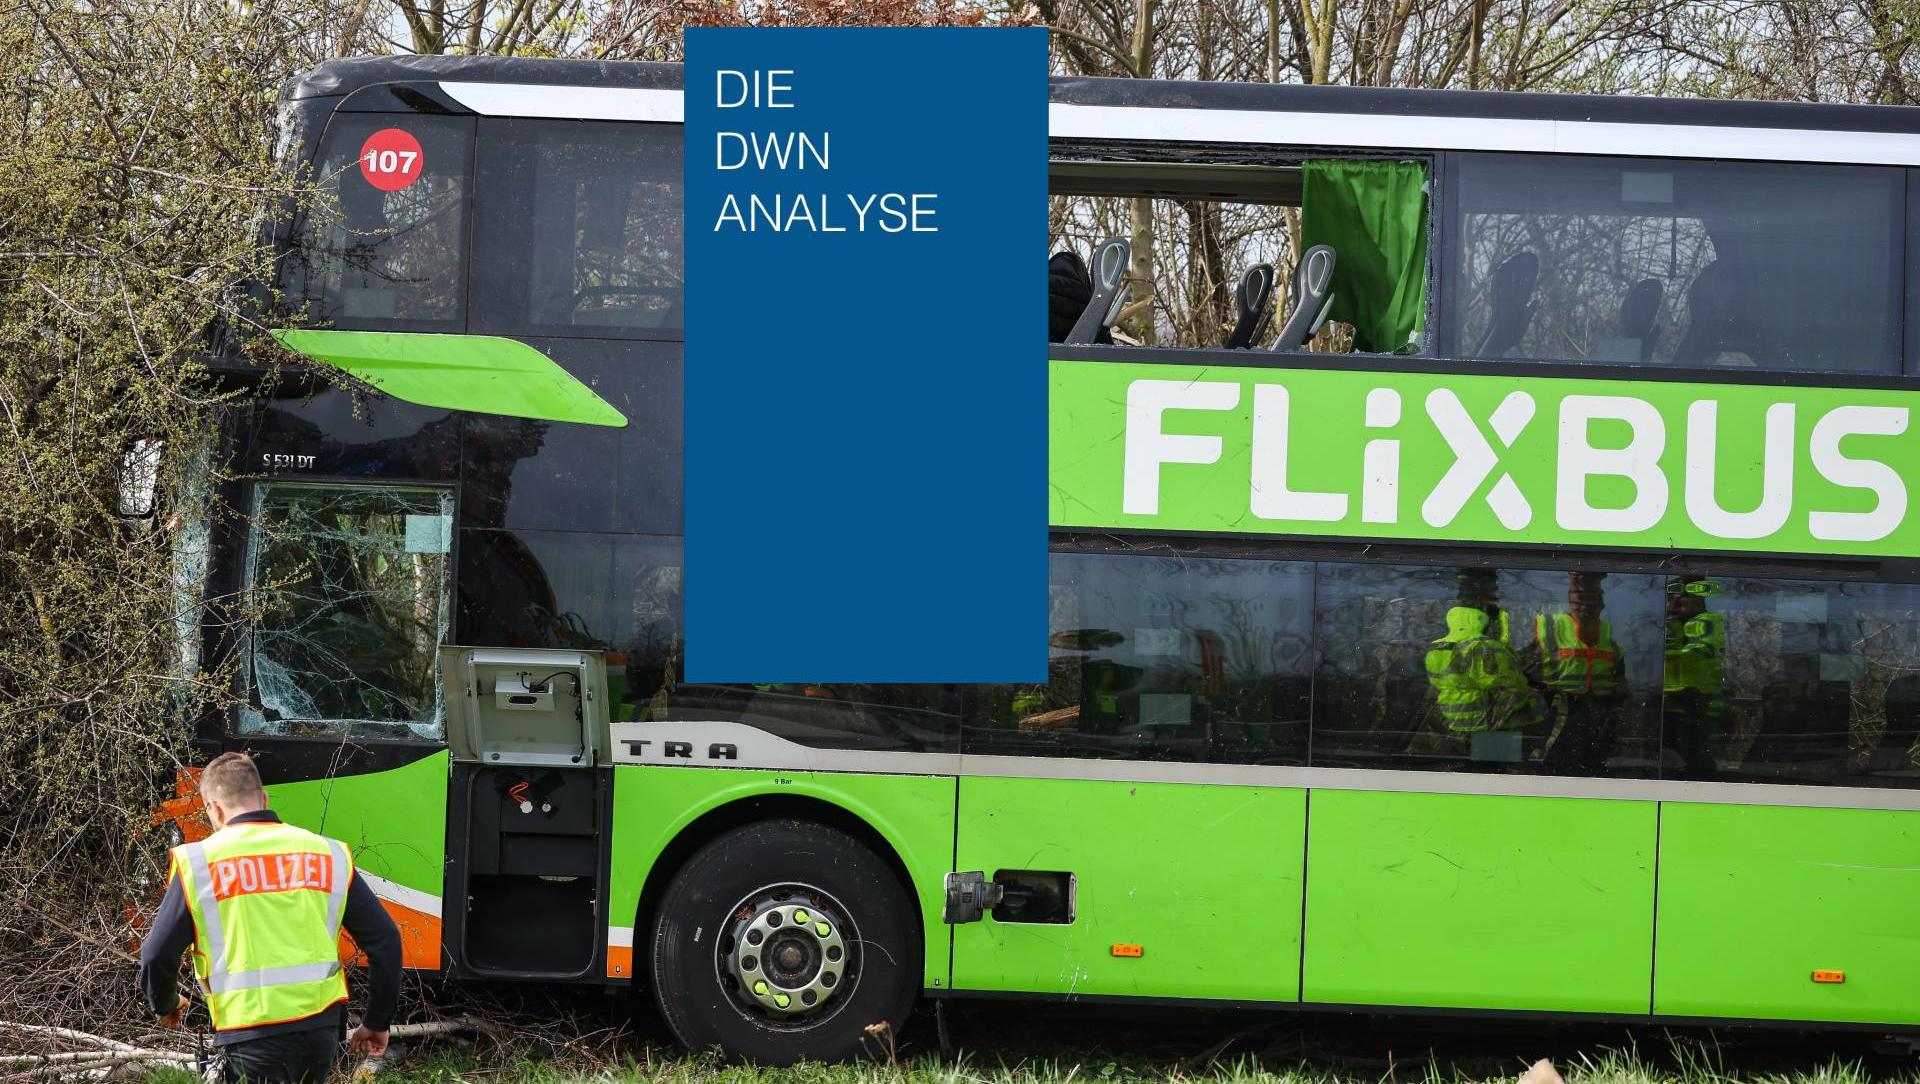 Flixbus-Unfall: In Zukunft doch lieber Bahnfahren?